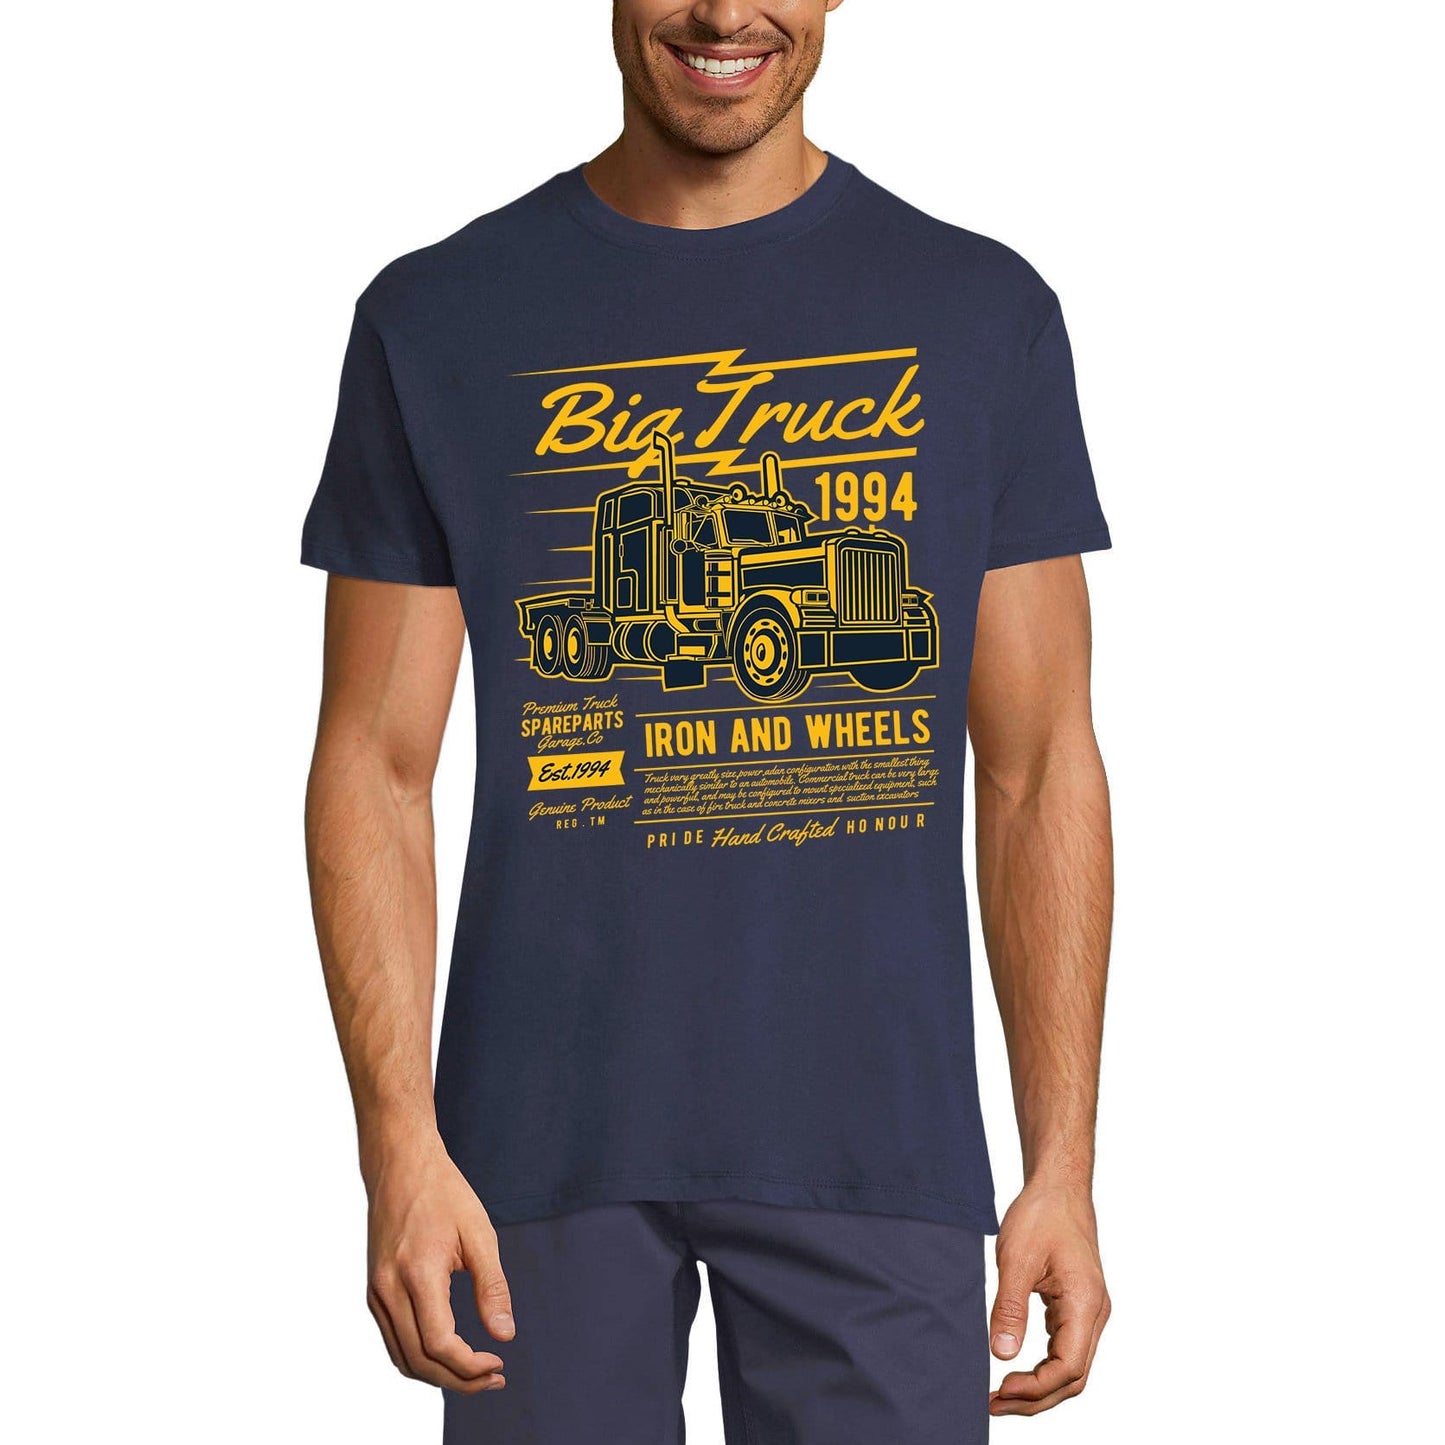 ULTRABASIC Men's T-Shirt Big Truck Since 1994 - Shirt for Truck Drivers